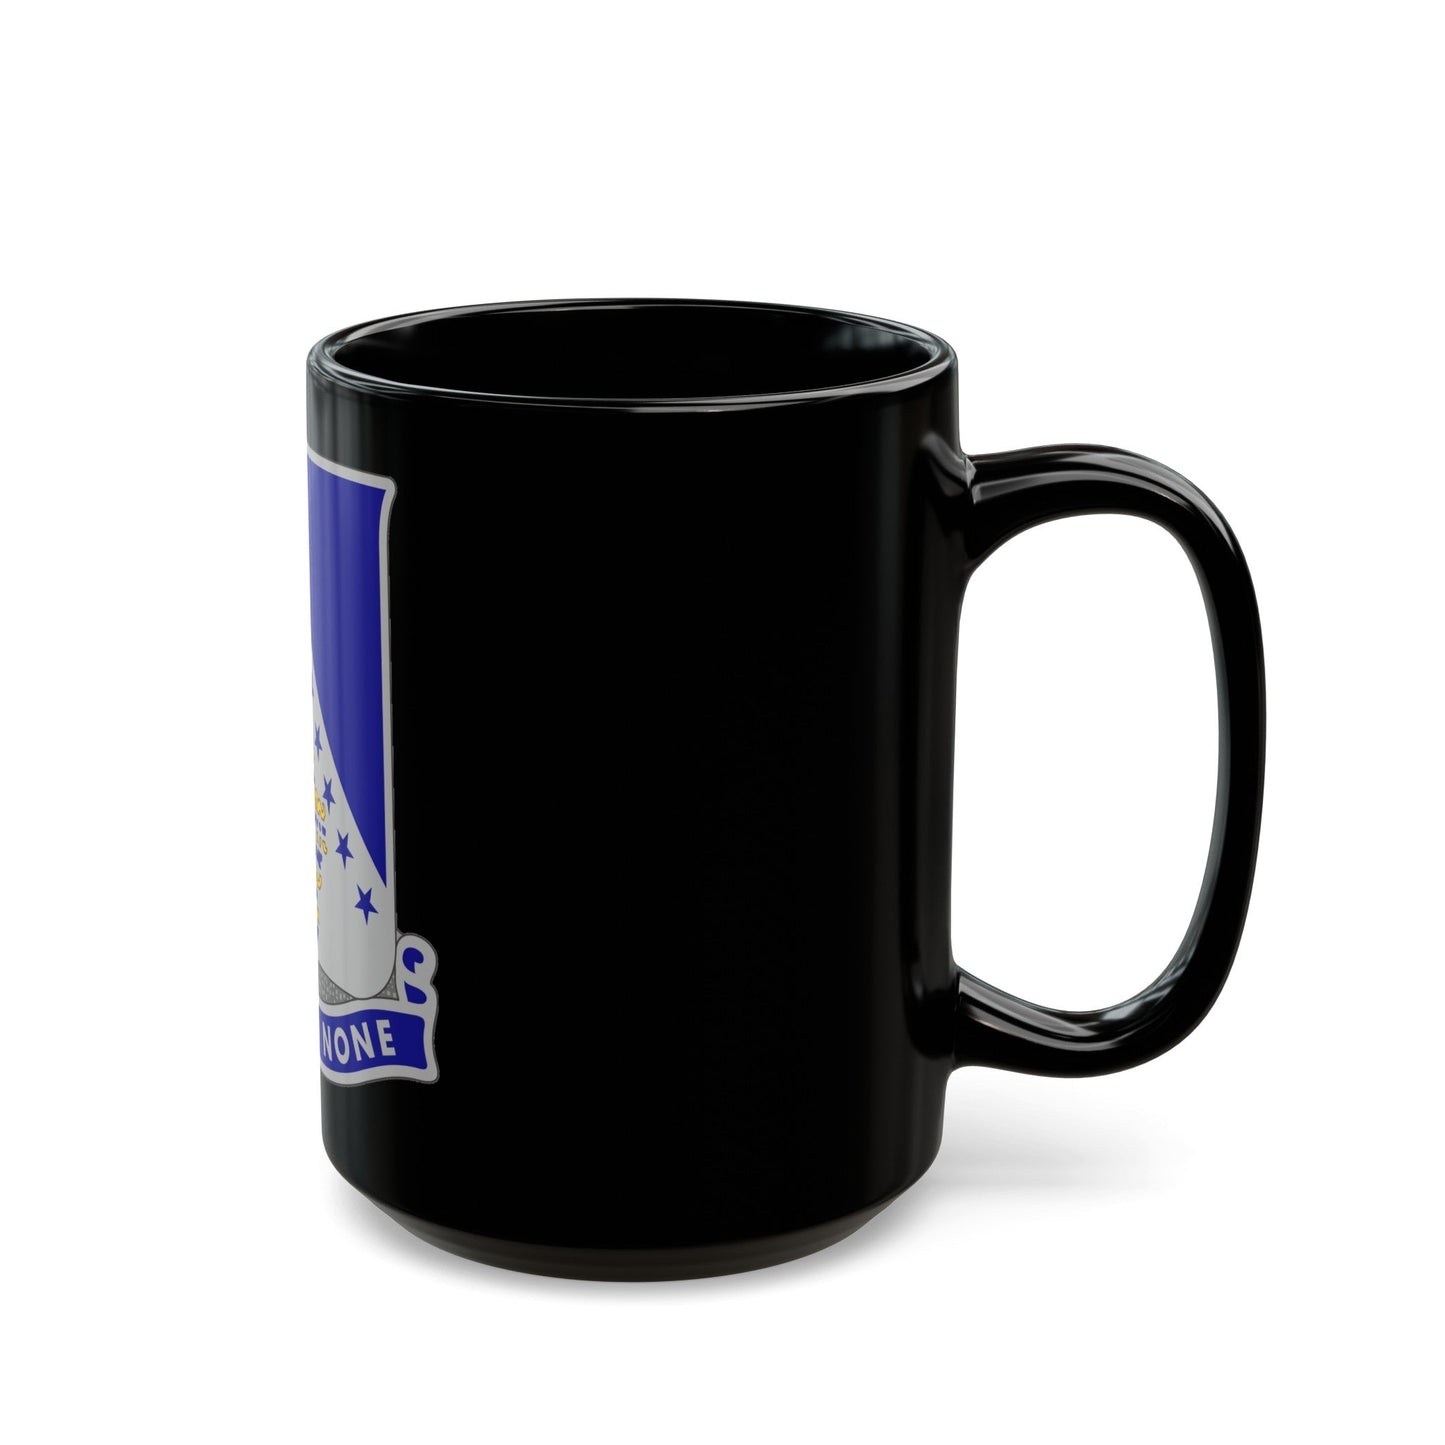 125th Infantry Regiment (U.S. Army) Black Coffee Mug